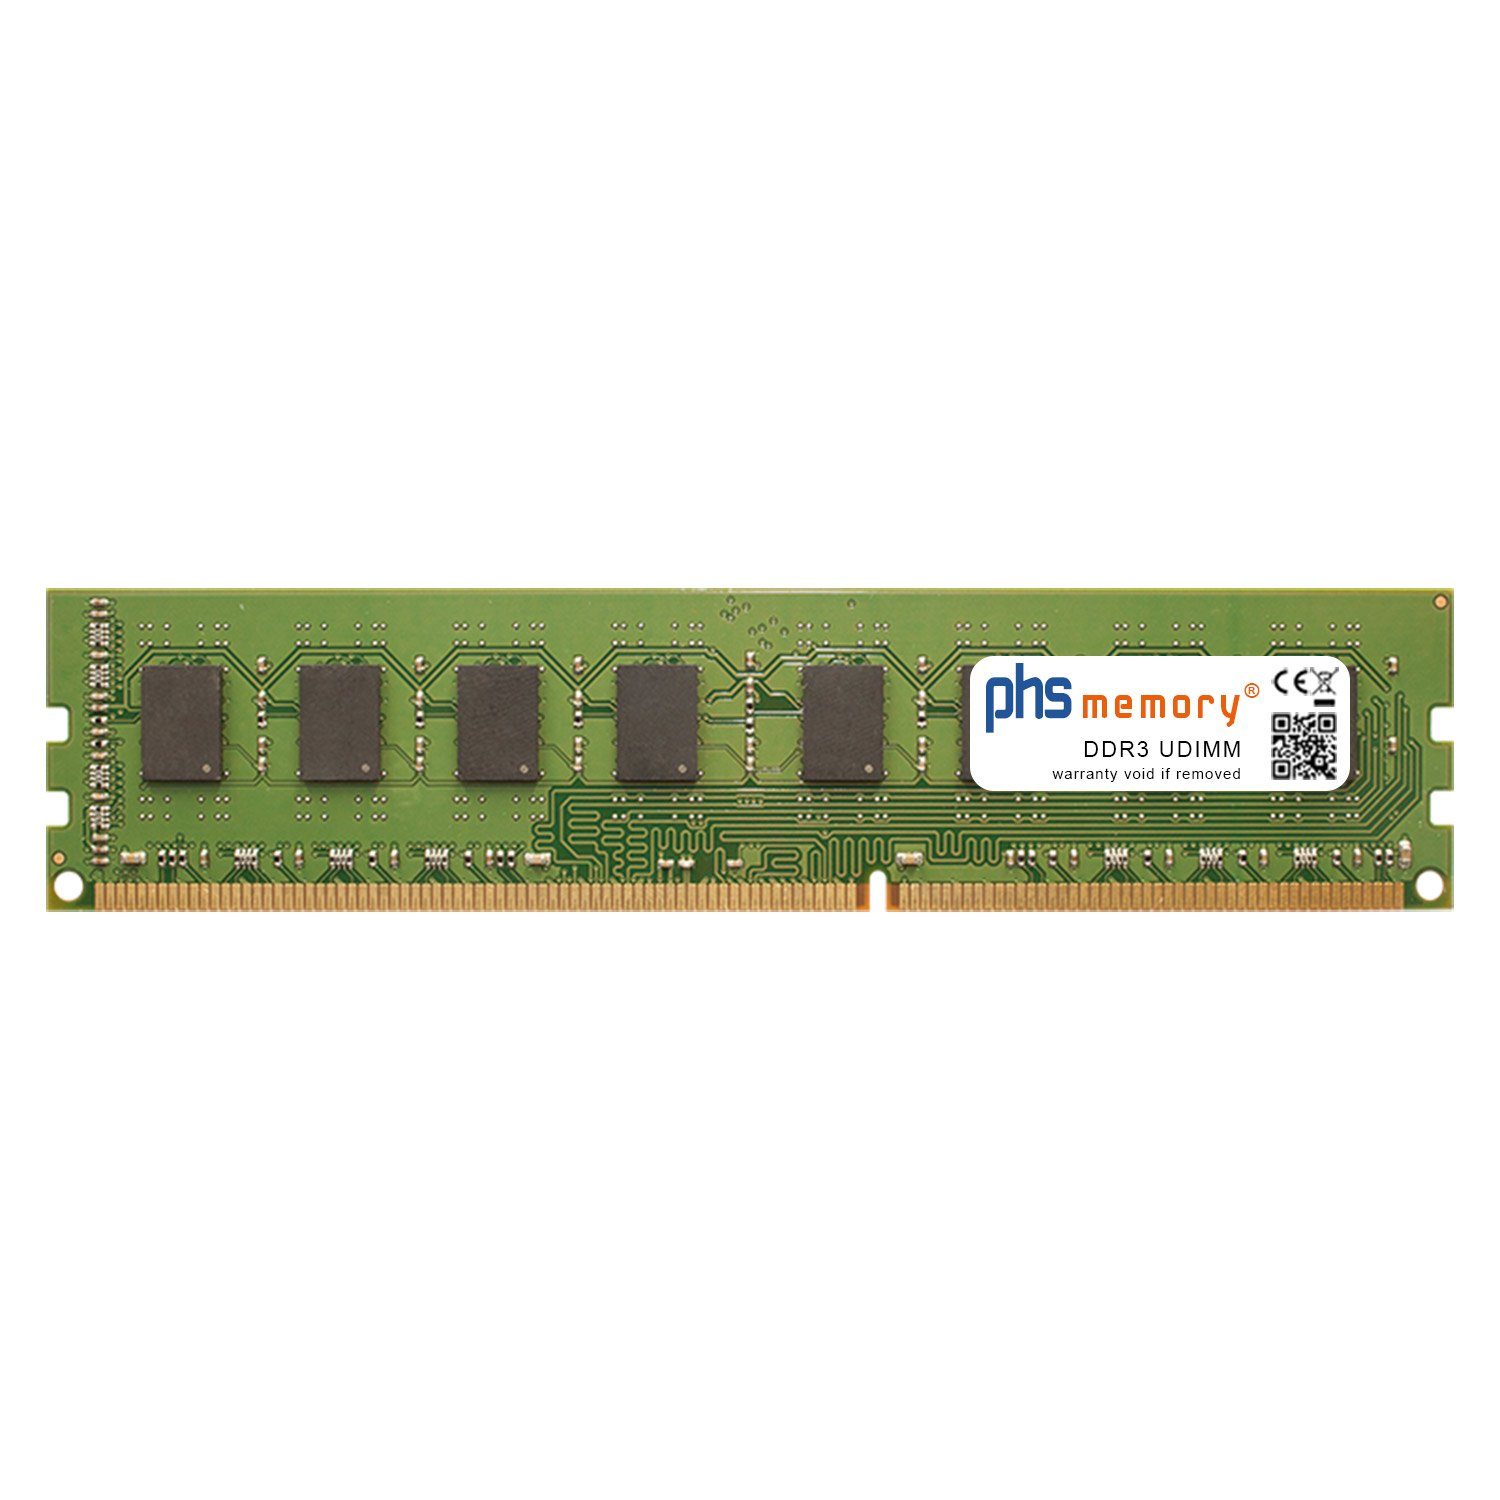 PHS-memory RAM für ASRock Z77 Extreme4-M Arbeitsspeicher